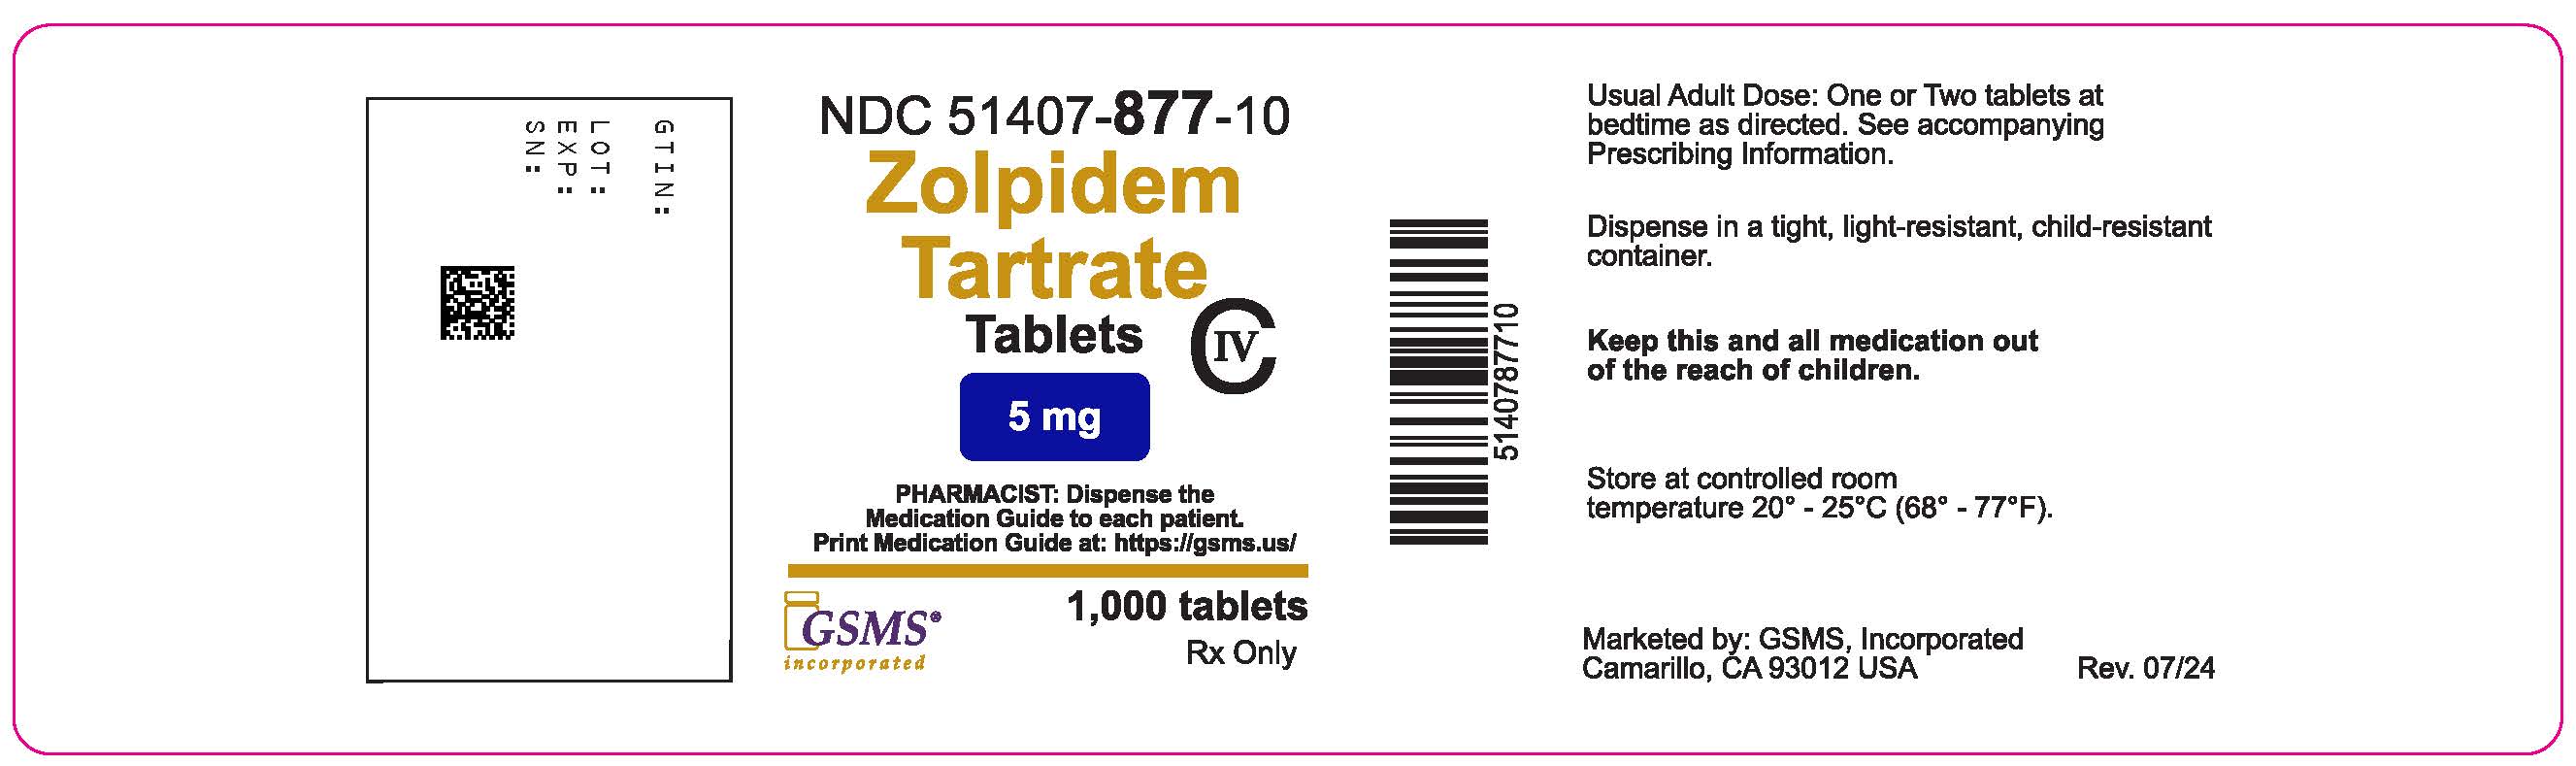 51407-877-10OL - Zolpidem 5 mg - Rev. 0724.jpg